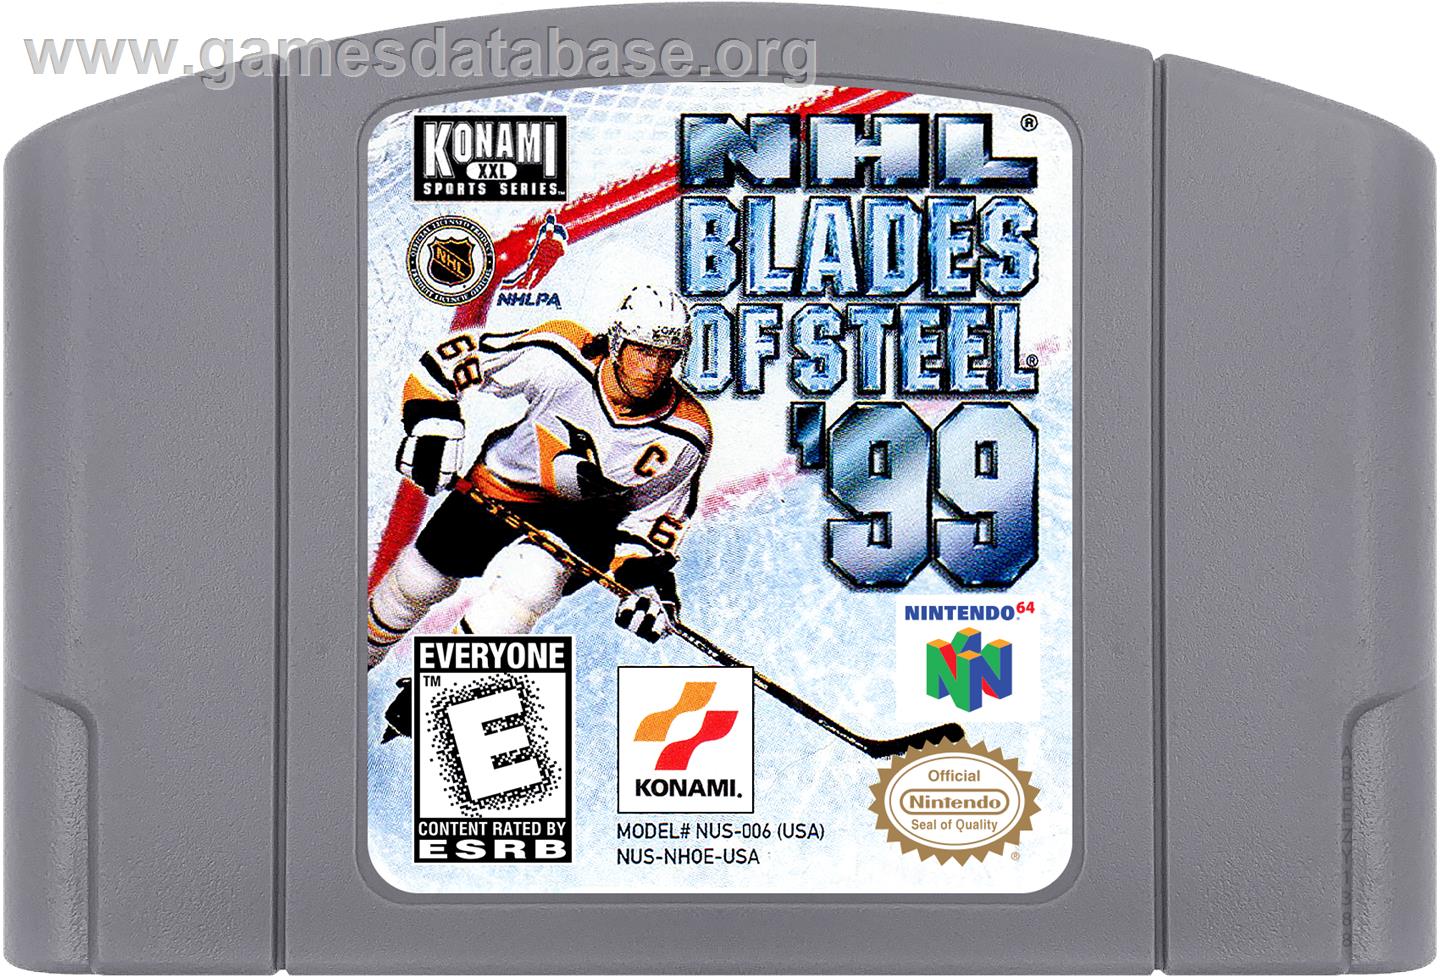 NHL Blades of Steel '99 - Nintendo N64 - Artwork - Cartridge